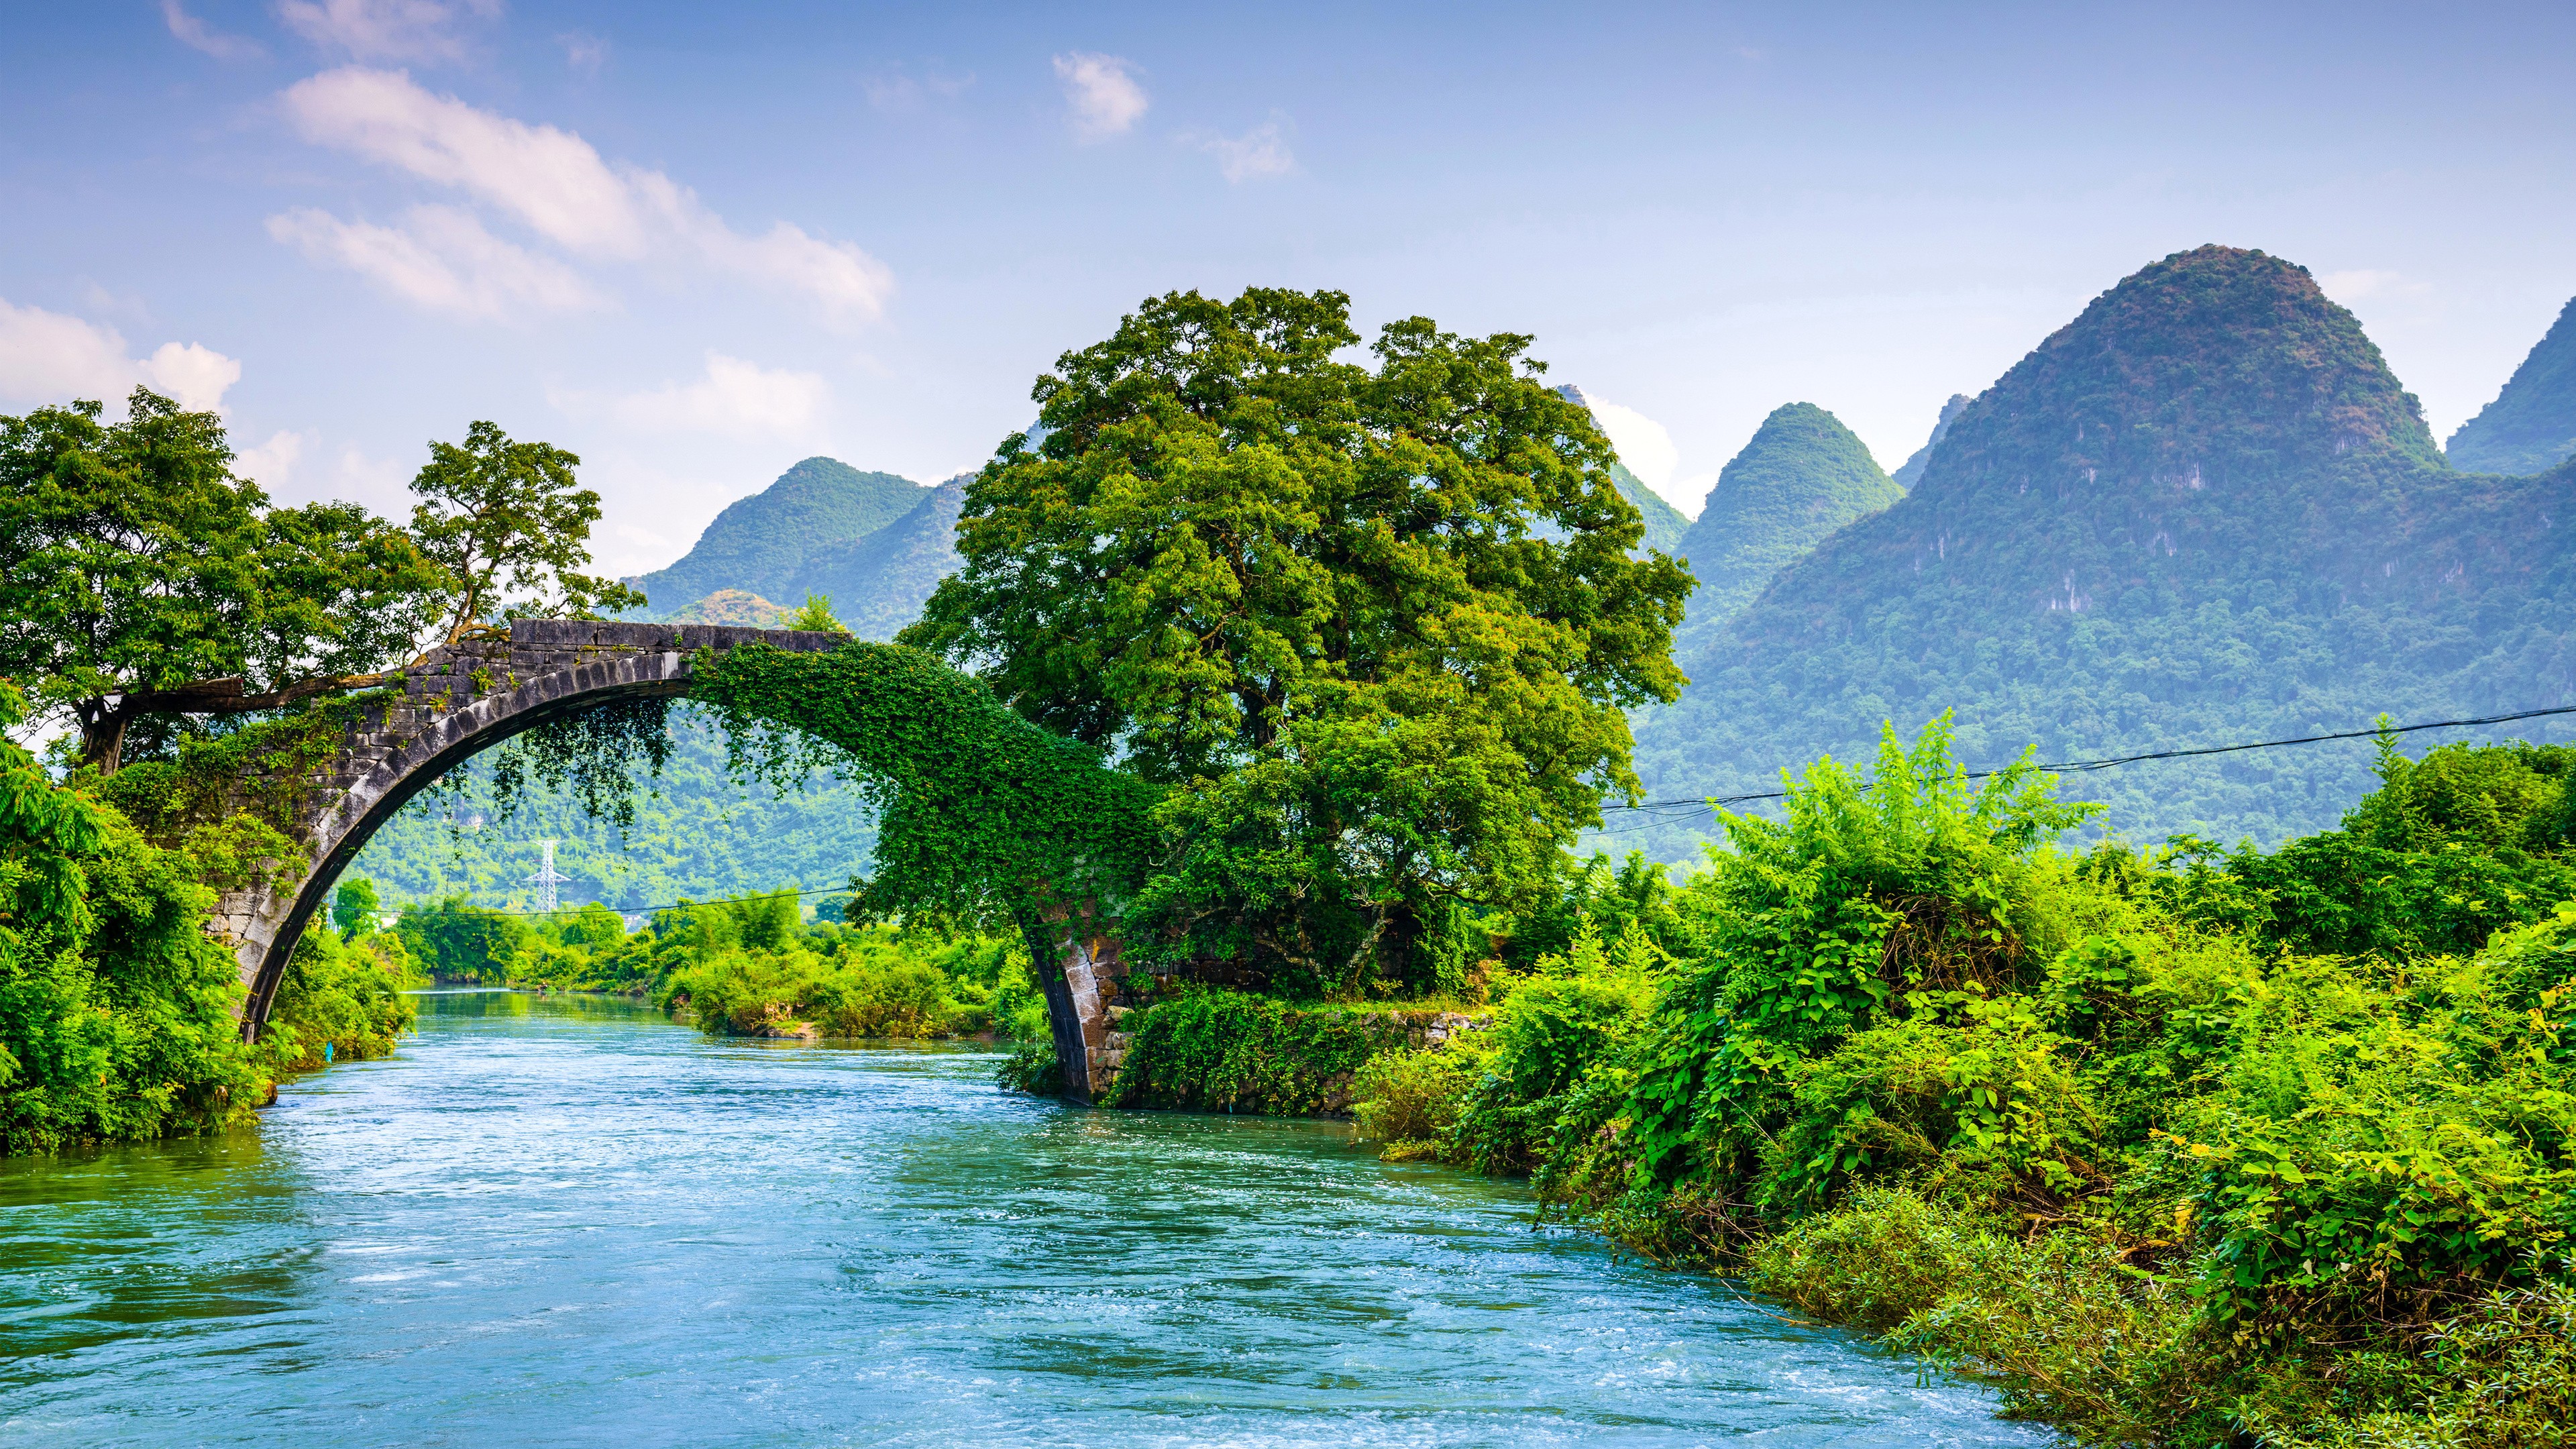 Hình ảnh những cây cầu đẹp nhất Việt Nam với góc chụp thần thánh  Việt  nam Viết Hình ảnh